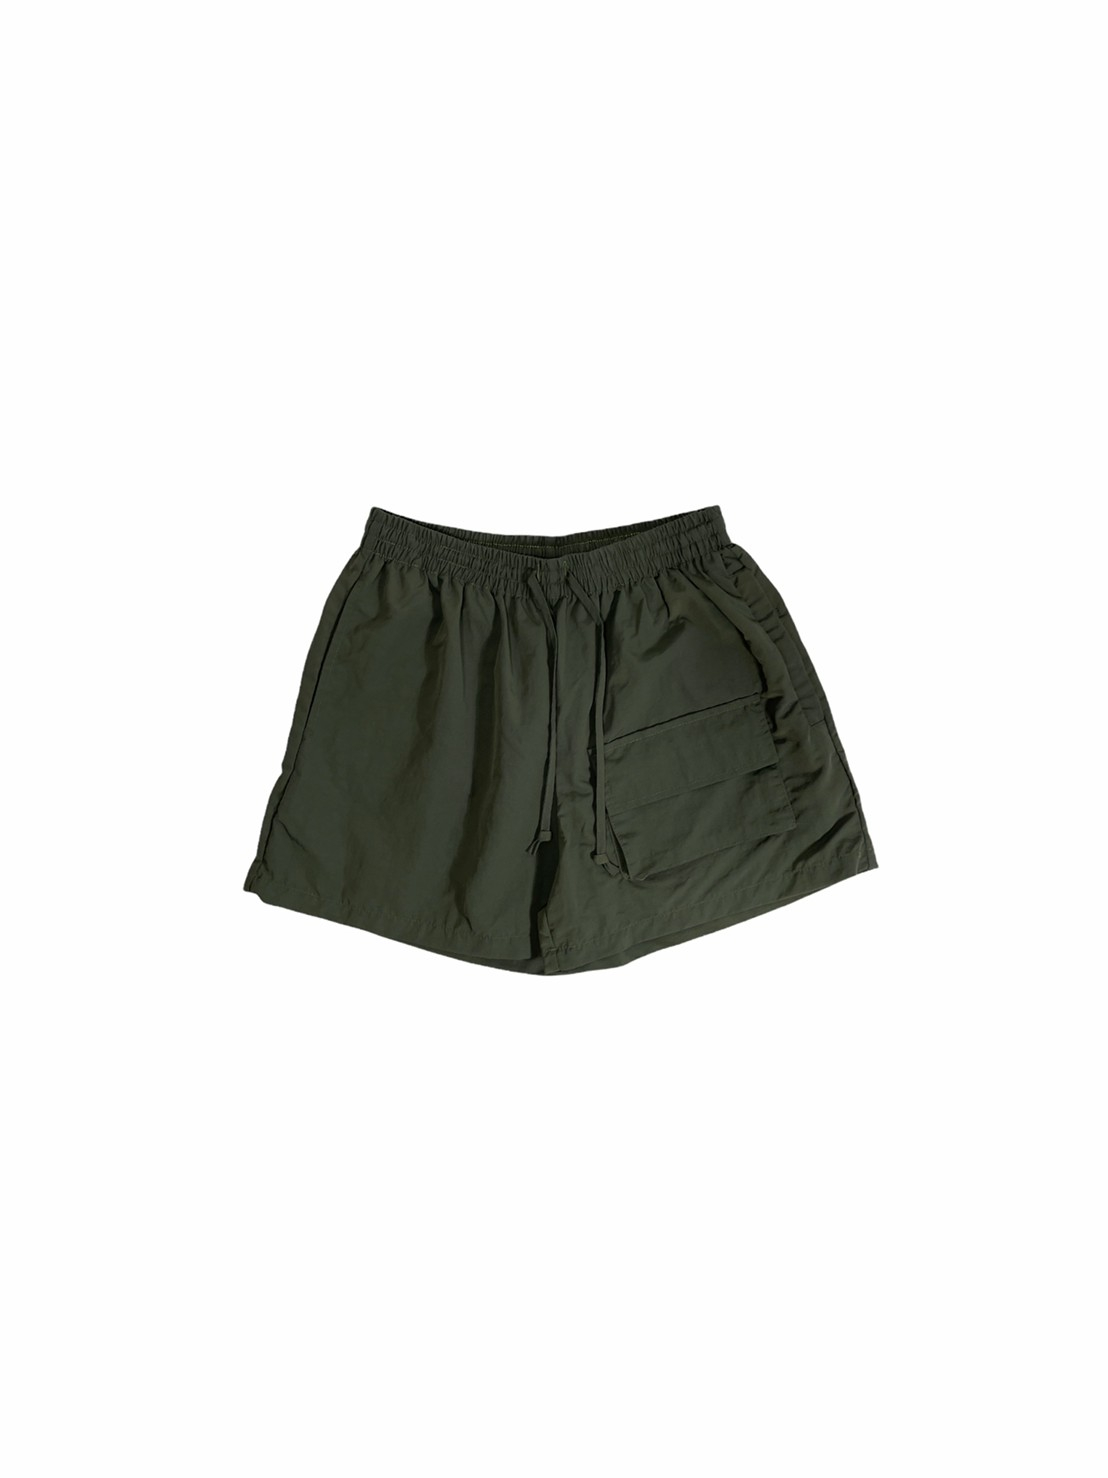 Nylon Outdoor Shorts (Green)